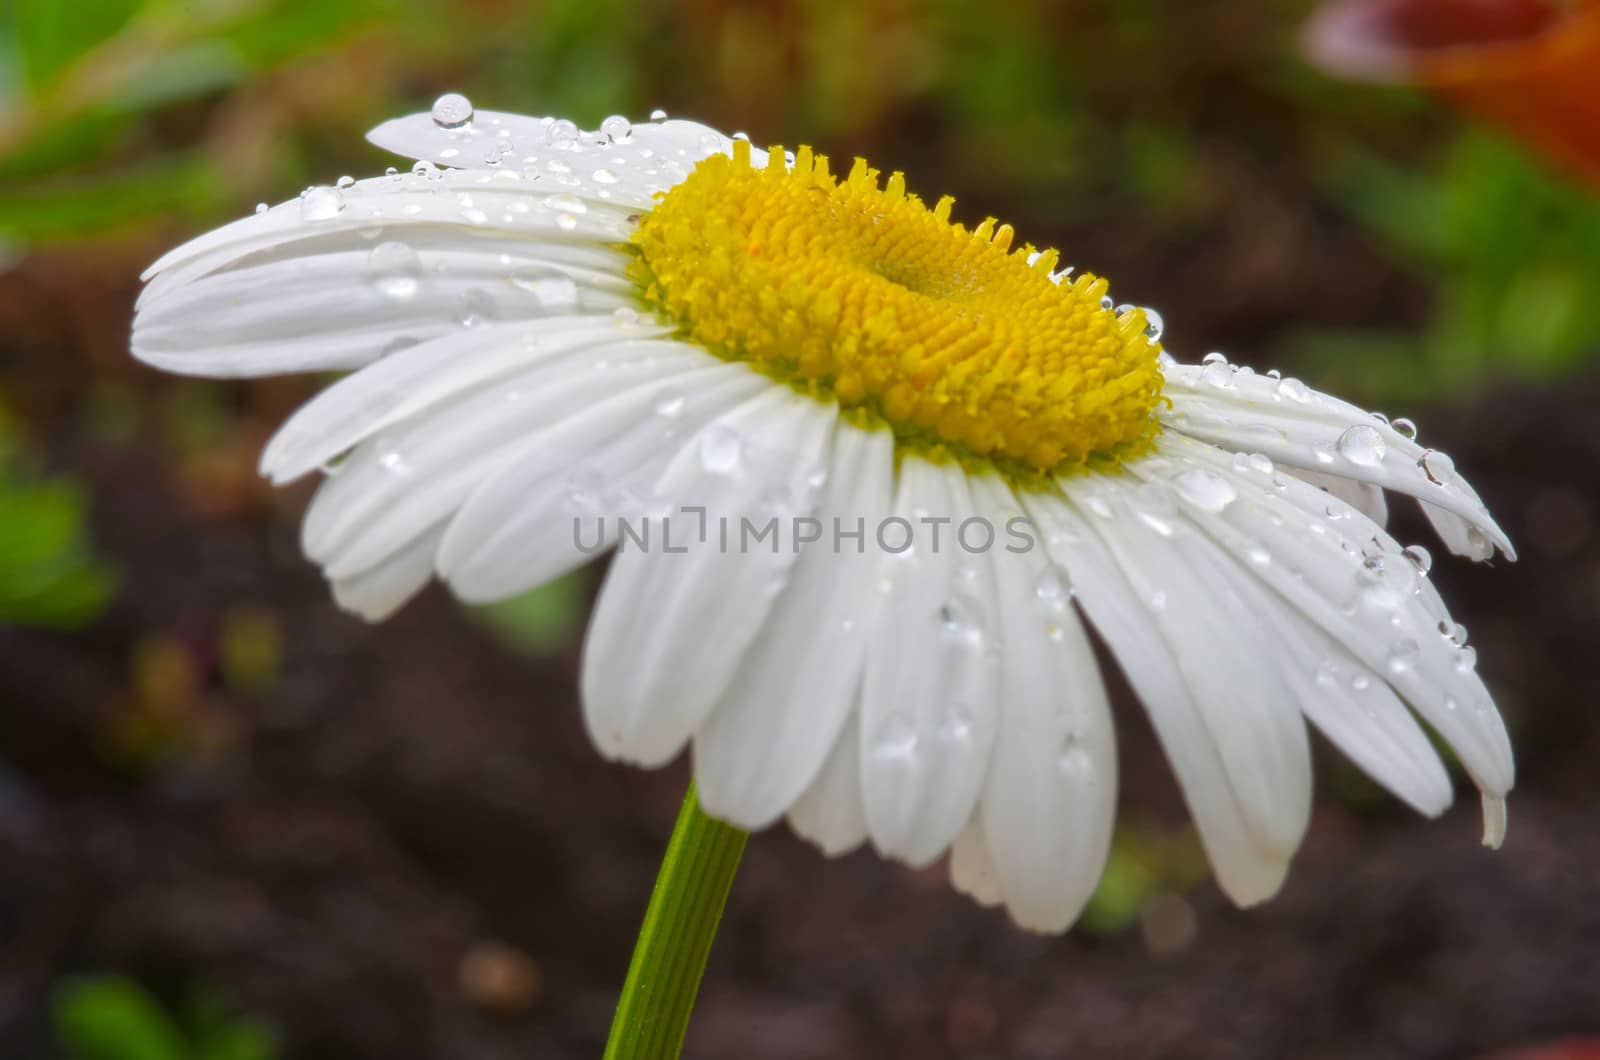 White flower afte rain, some rain drops on petals